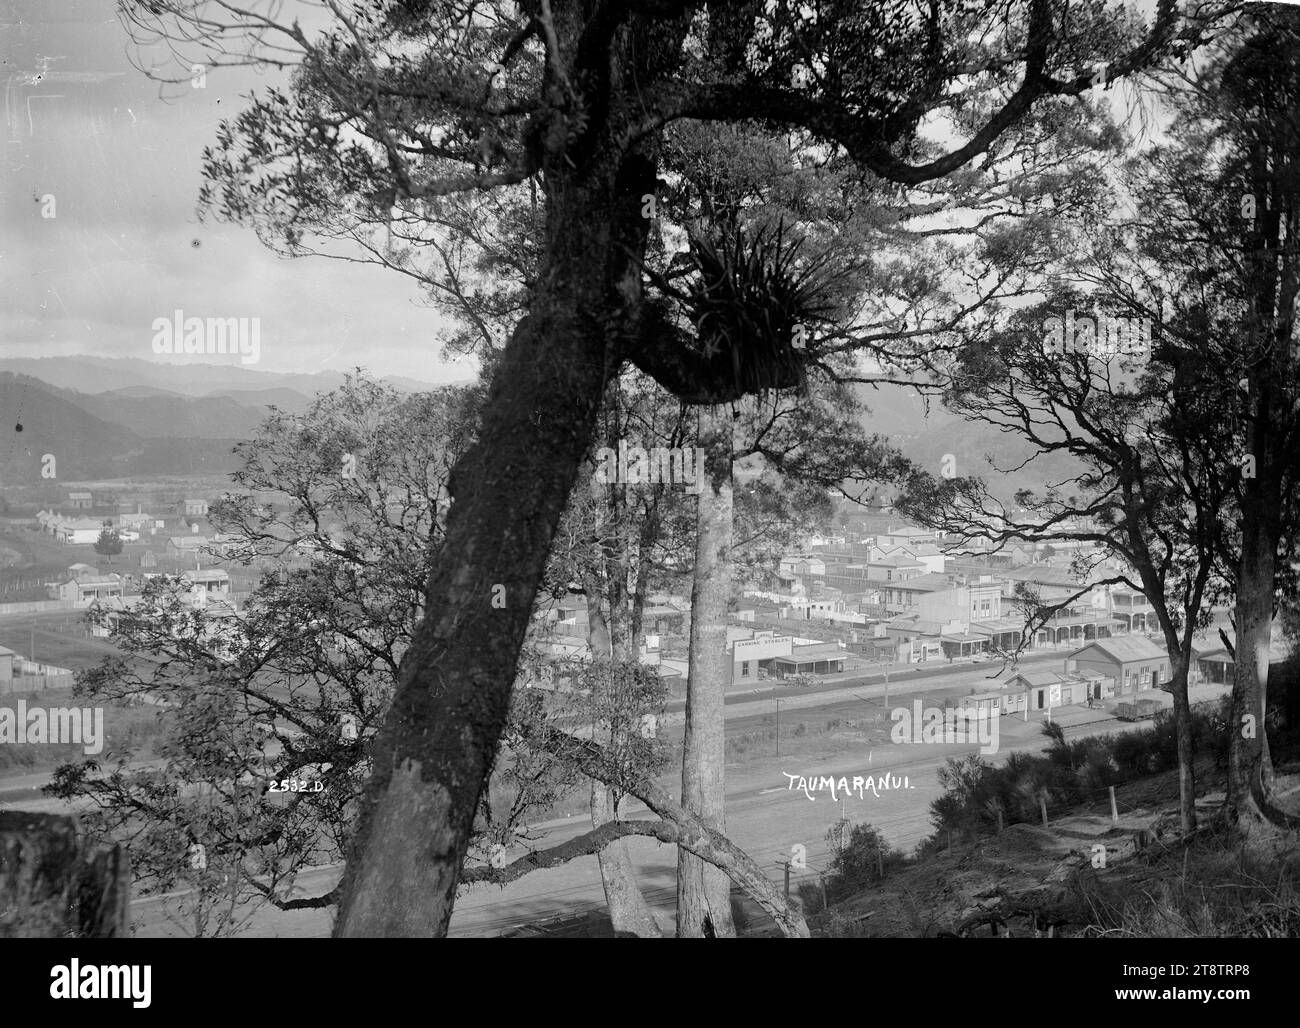 Allgemeiner Blick auf Taumarunui, Blick auf Taumarunui von Bäumen auf einem Hügel, mit dem Bahnhof im Zentrum im Vordergrund und der Hauptstraße hinter der Bahnlinie. Ca. 1910er Jahre Stockfoto